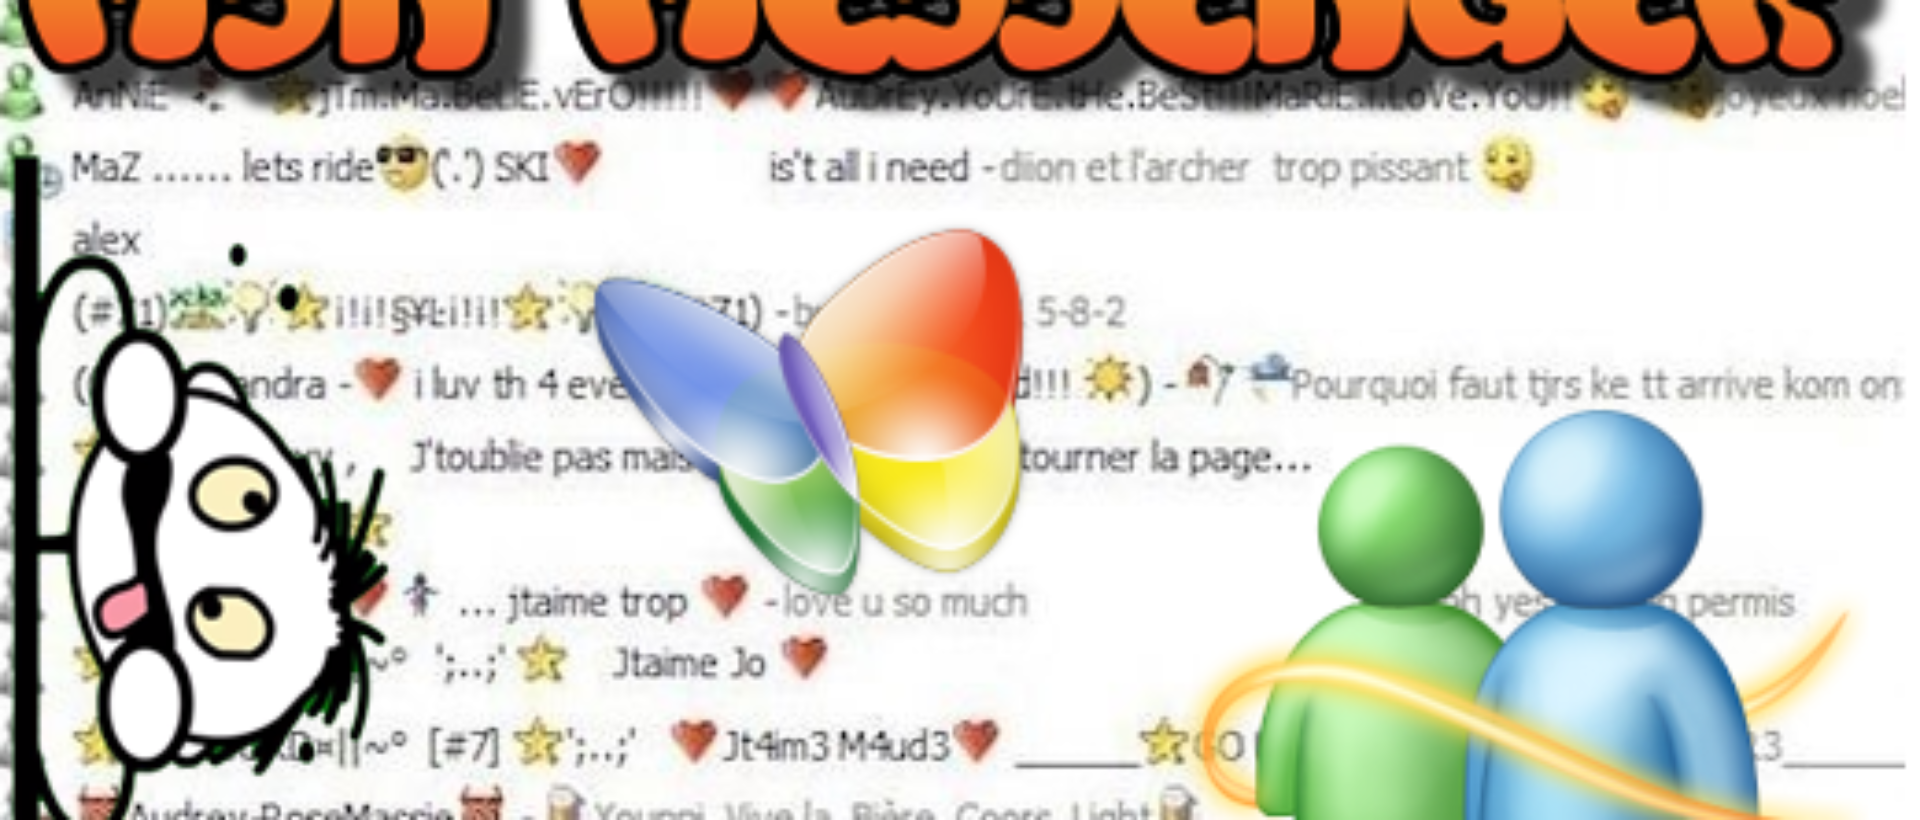 Die Geschichte des MSN Messengers